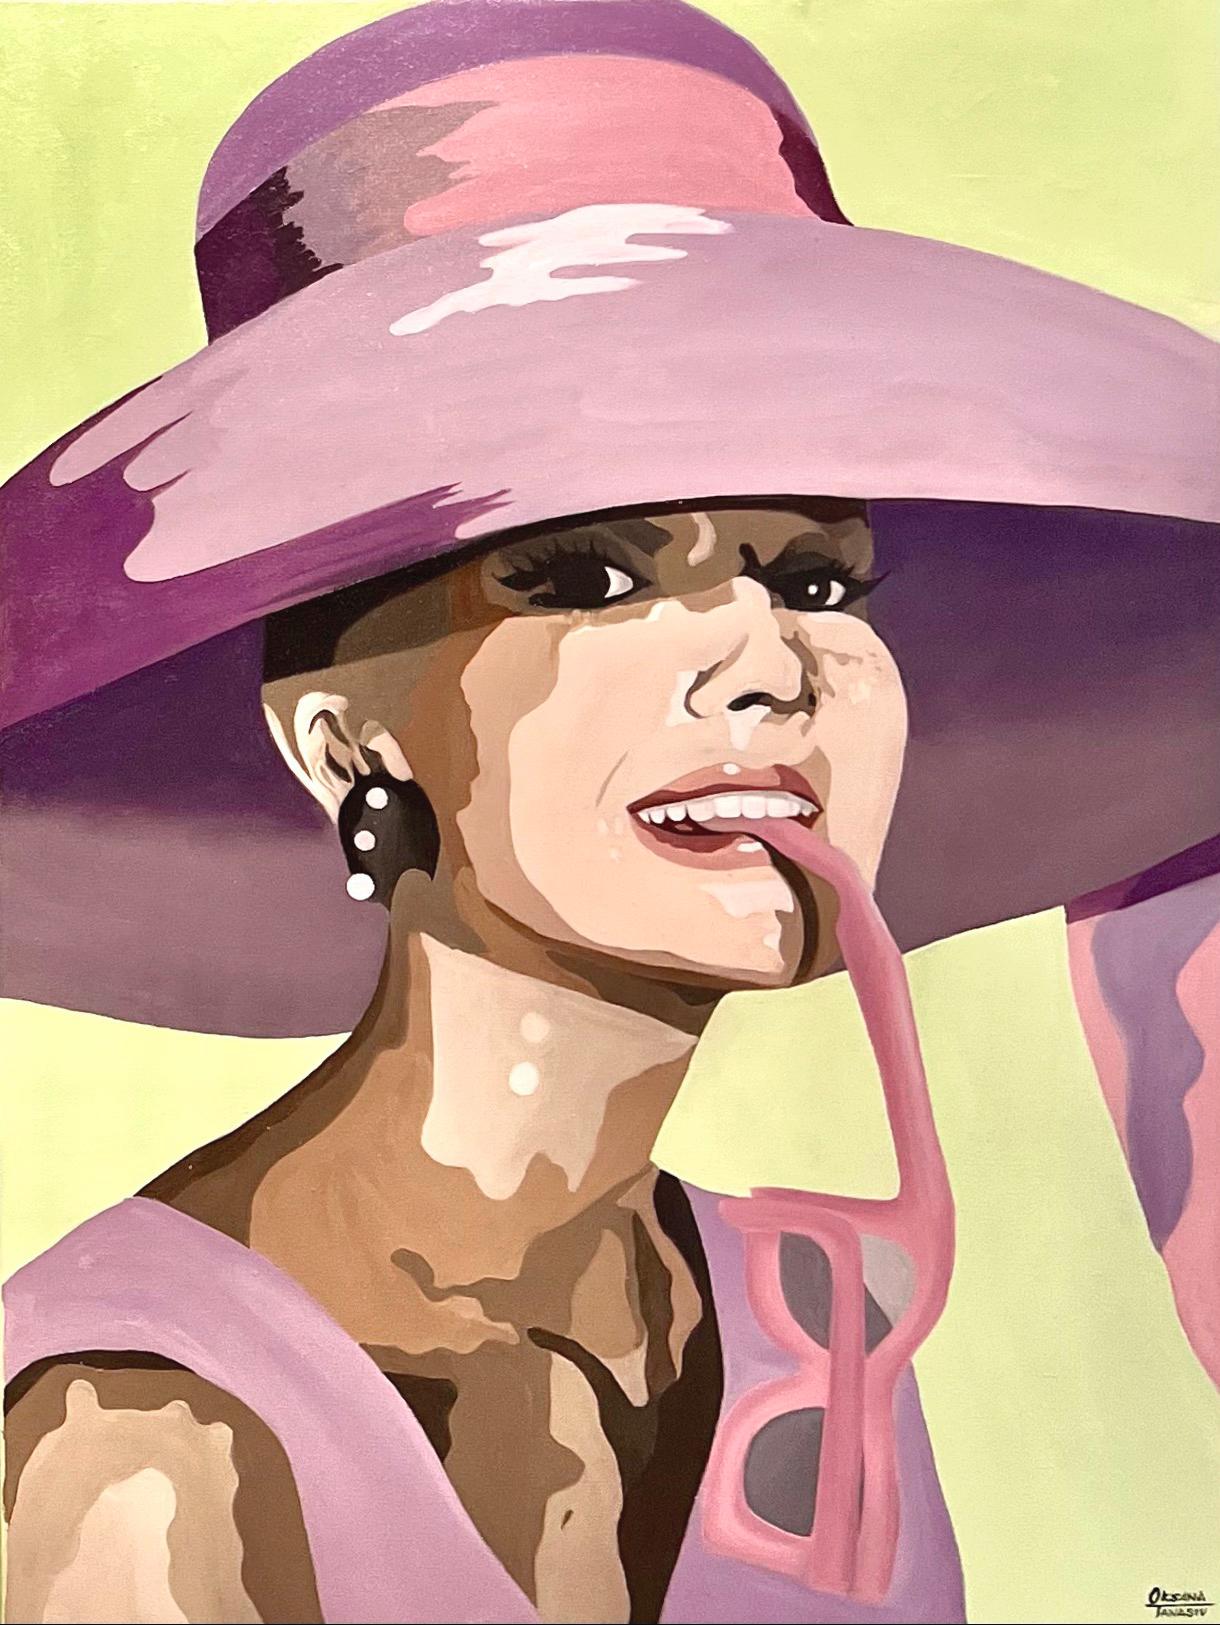 Audrey 6. Celebrity lavender lime pop-art portrait of iconic Audrey Hepburn